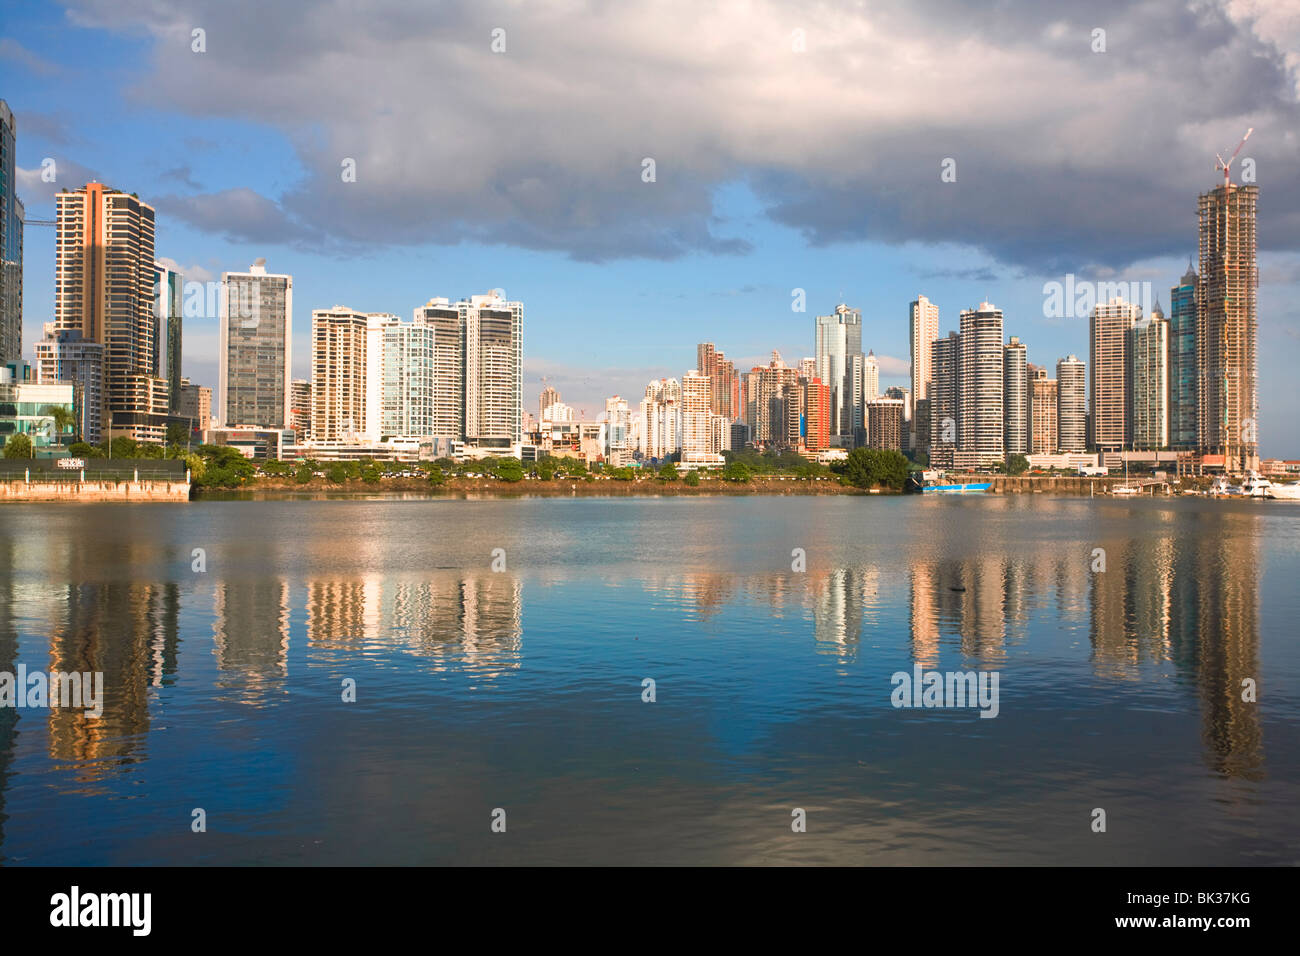 Avenue Balboa e Punta Patilla edifici riflessa nella baia di Panama, Panama City, Panama America Centrale Foto Stock